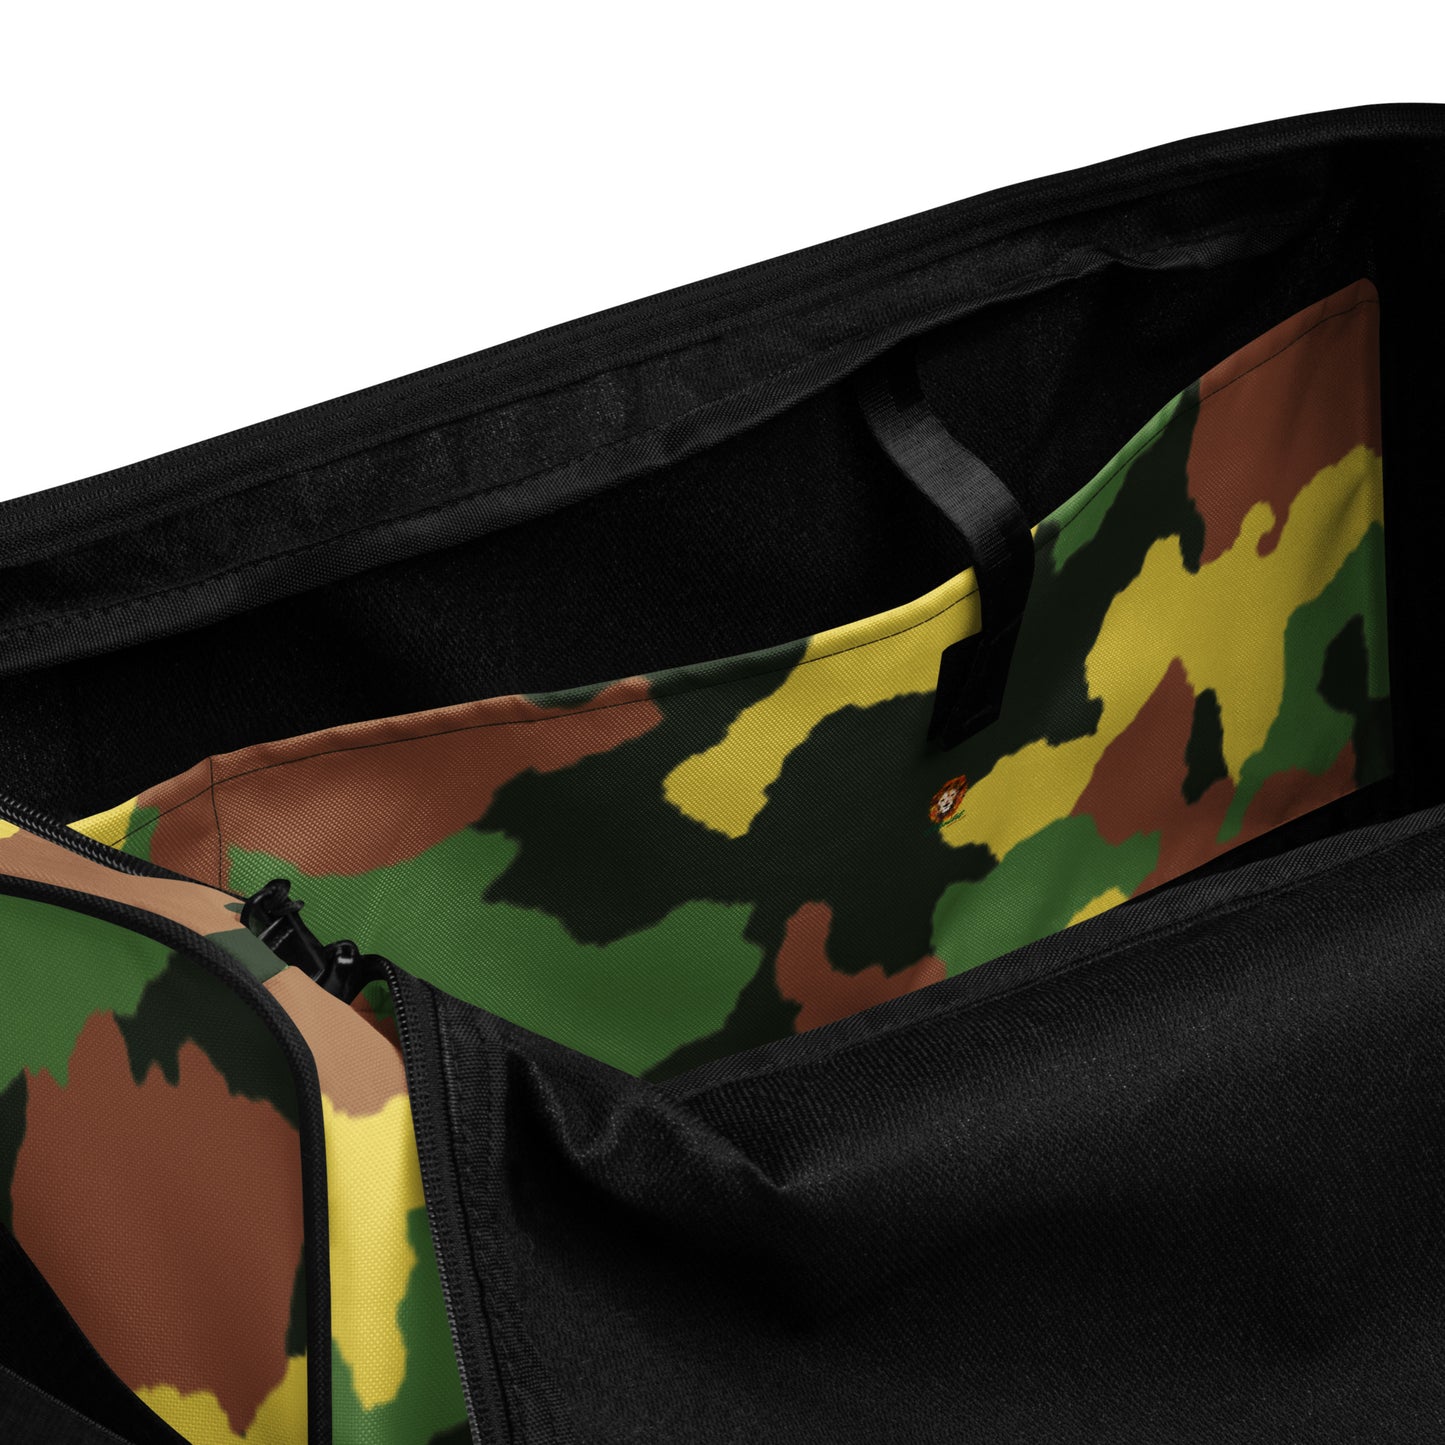 Army Camo Duffle Bag - OG Hippie Chick